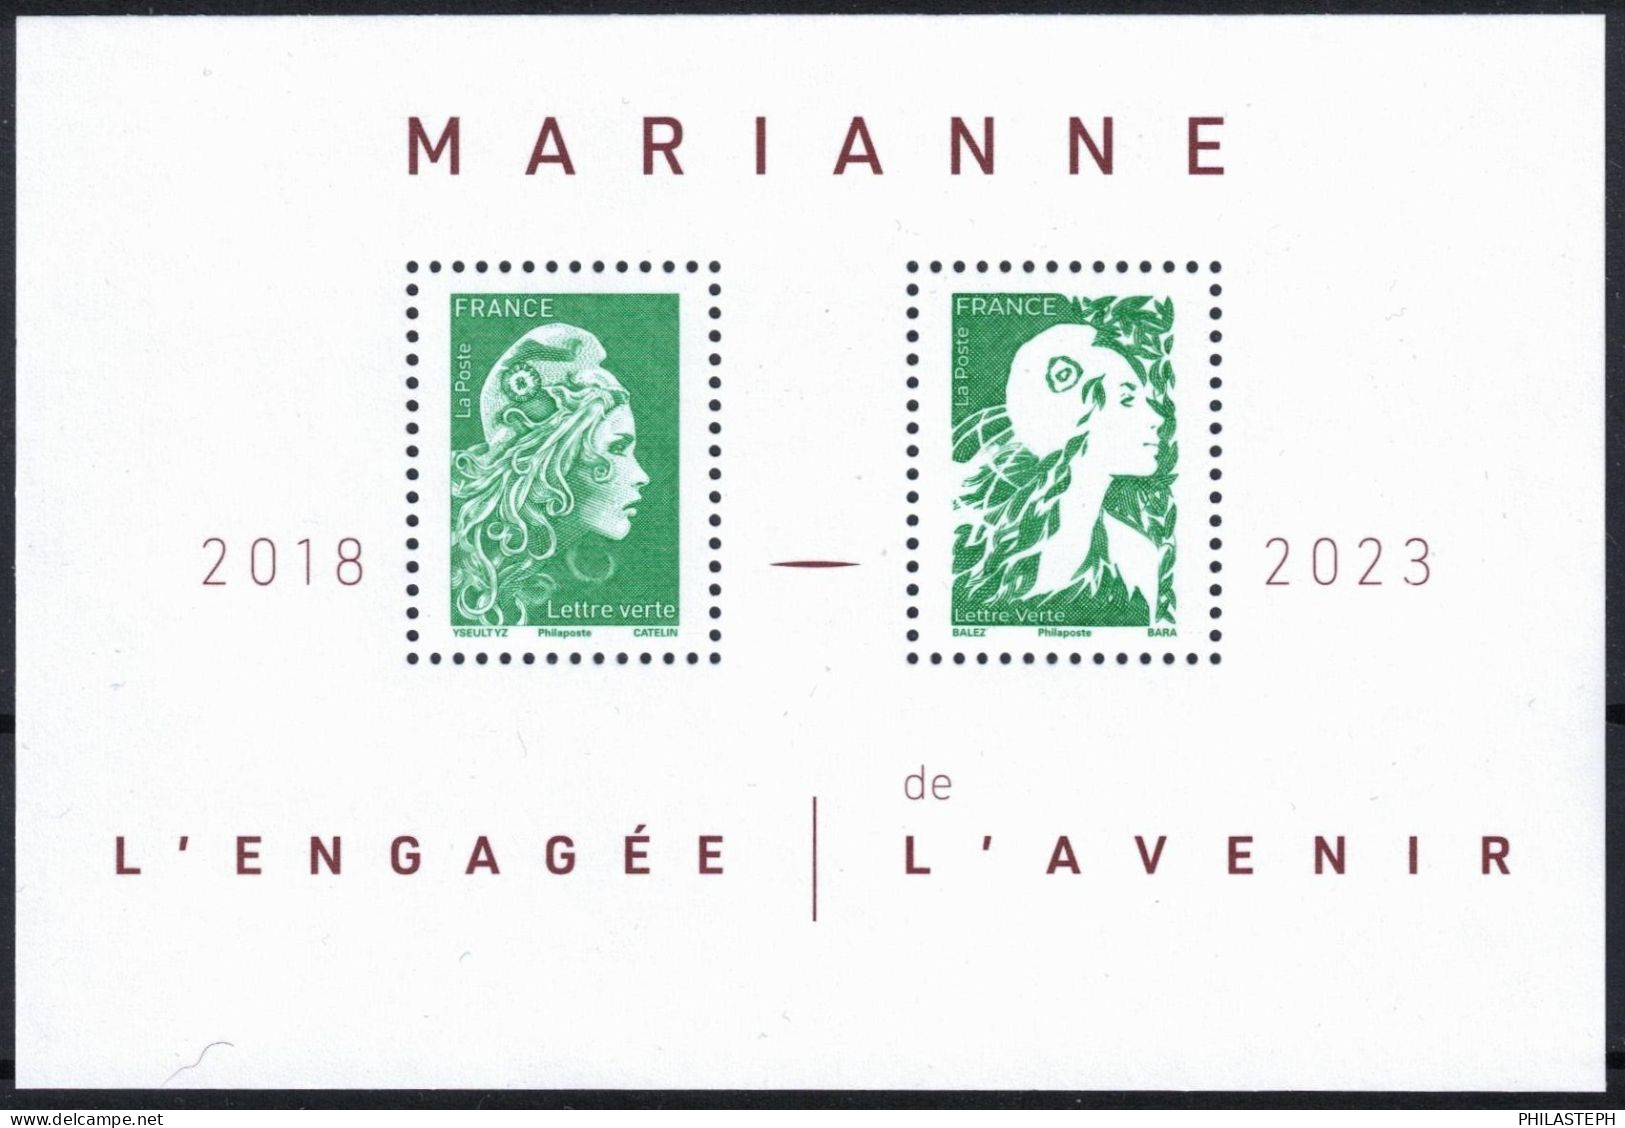 FRANCE 2024 -  Bloc Feuillet  LETTRE VERTE - MARIANNE L'ENGAGEE 2018 / MARIANNE DE L'AVENIR 2023 - BLOC YT 158 Neuf ** - Nuevos